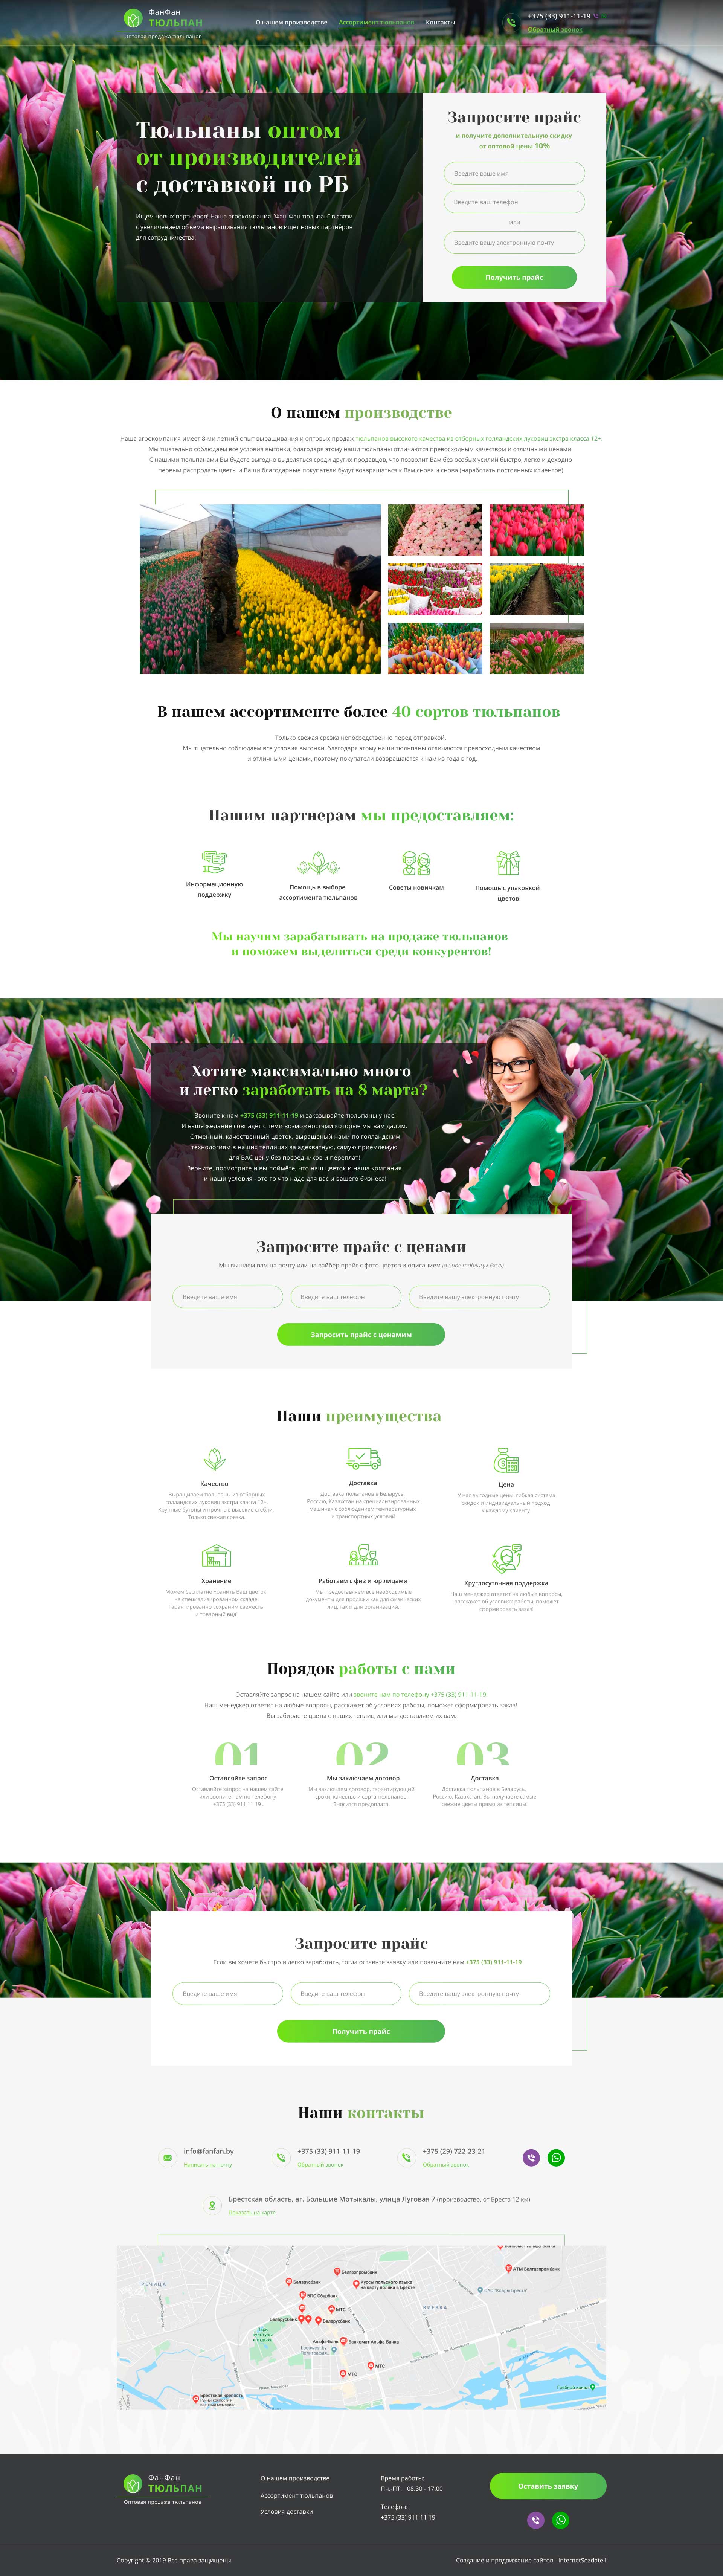 Разработка сайта по продаже тюльпанов оптом - главная 